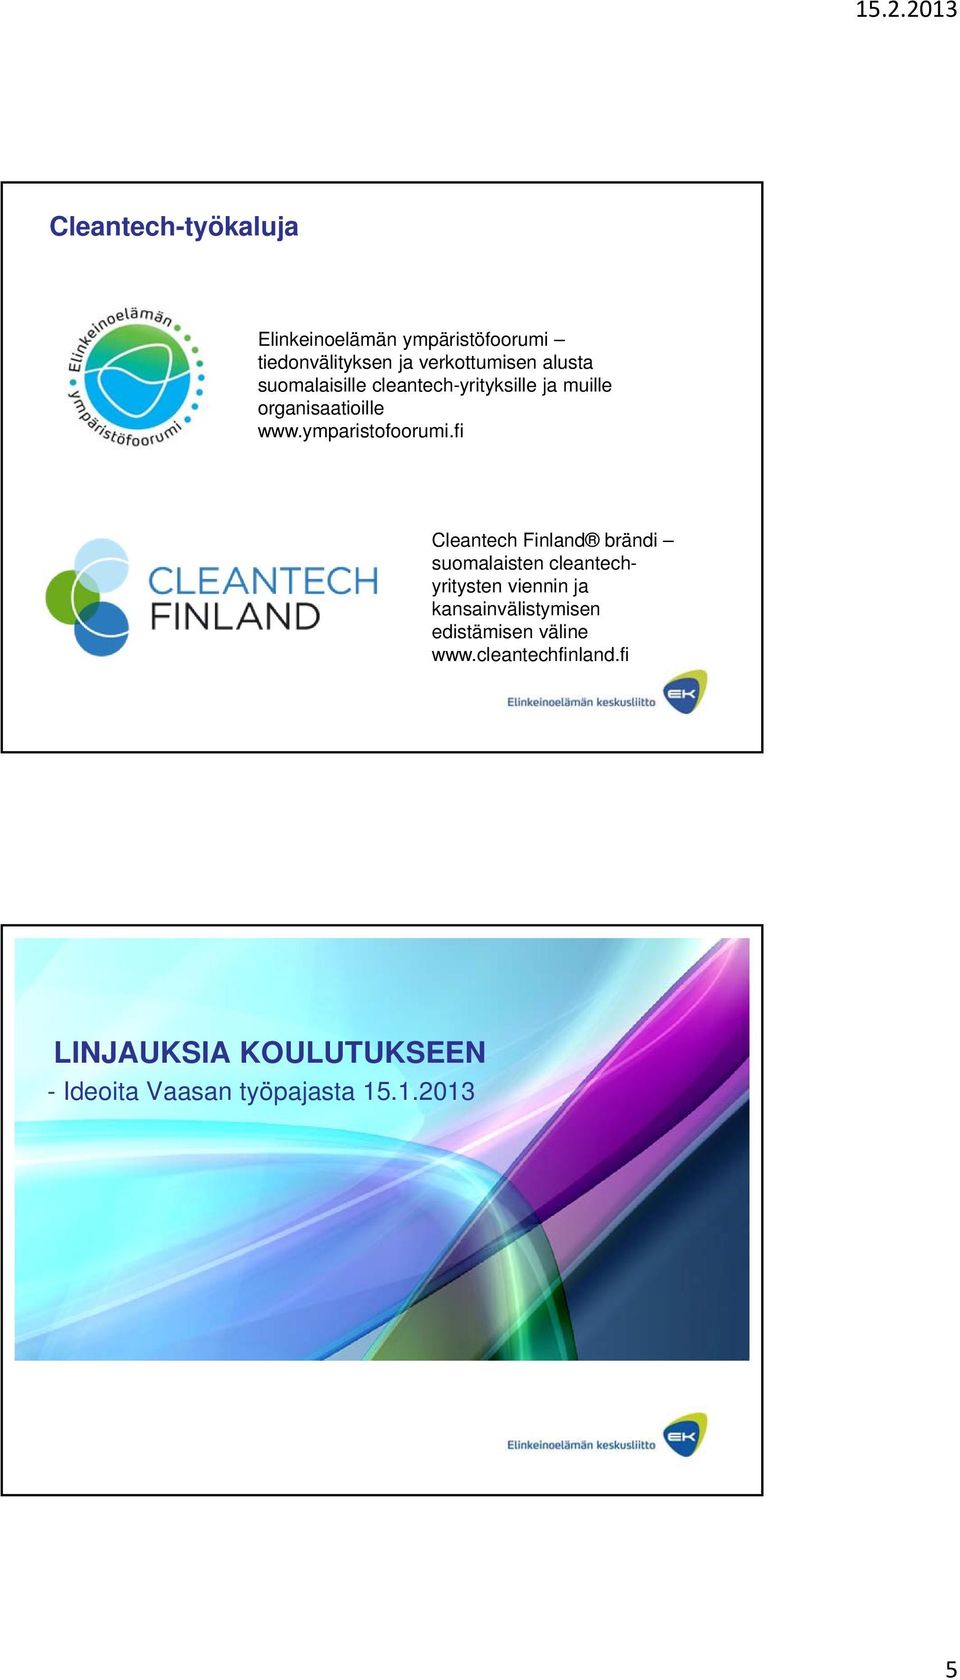 fi Cleantech Finland brändi suomalaisten cleantechyritysten viennin ja kansainvälistymisen